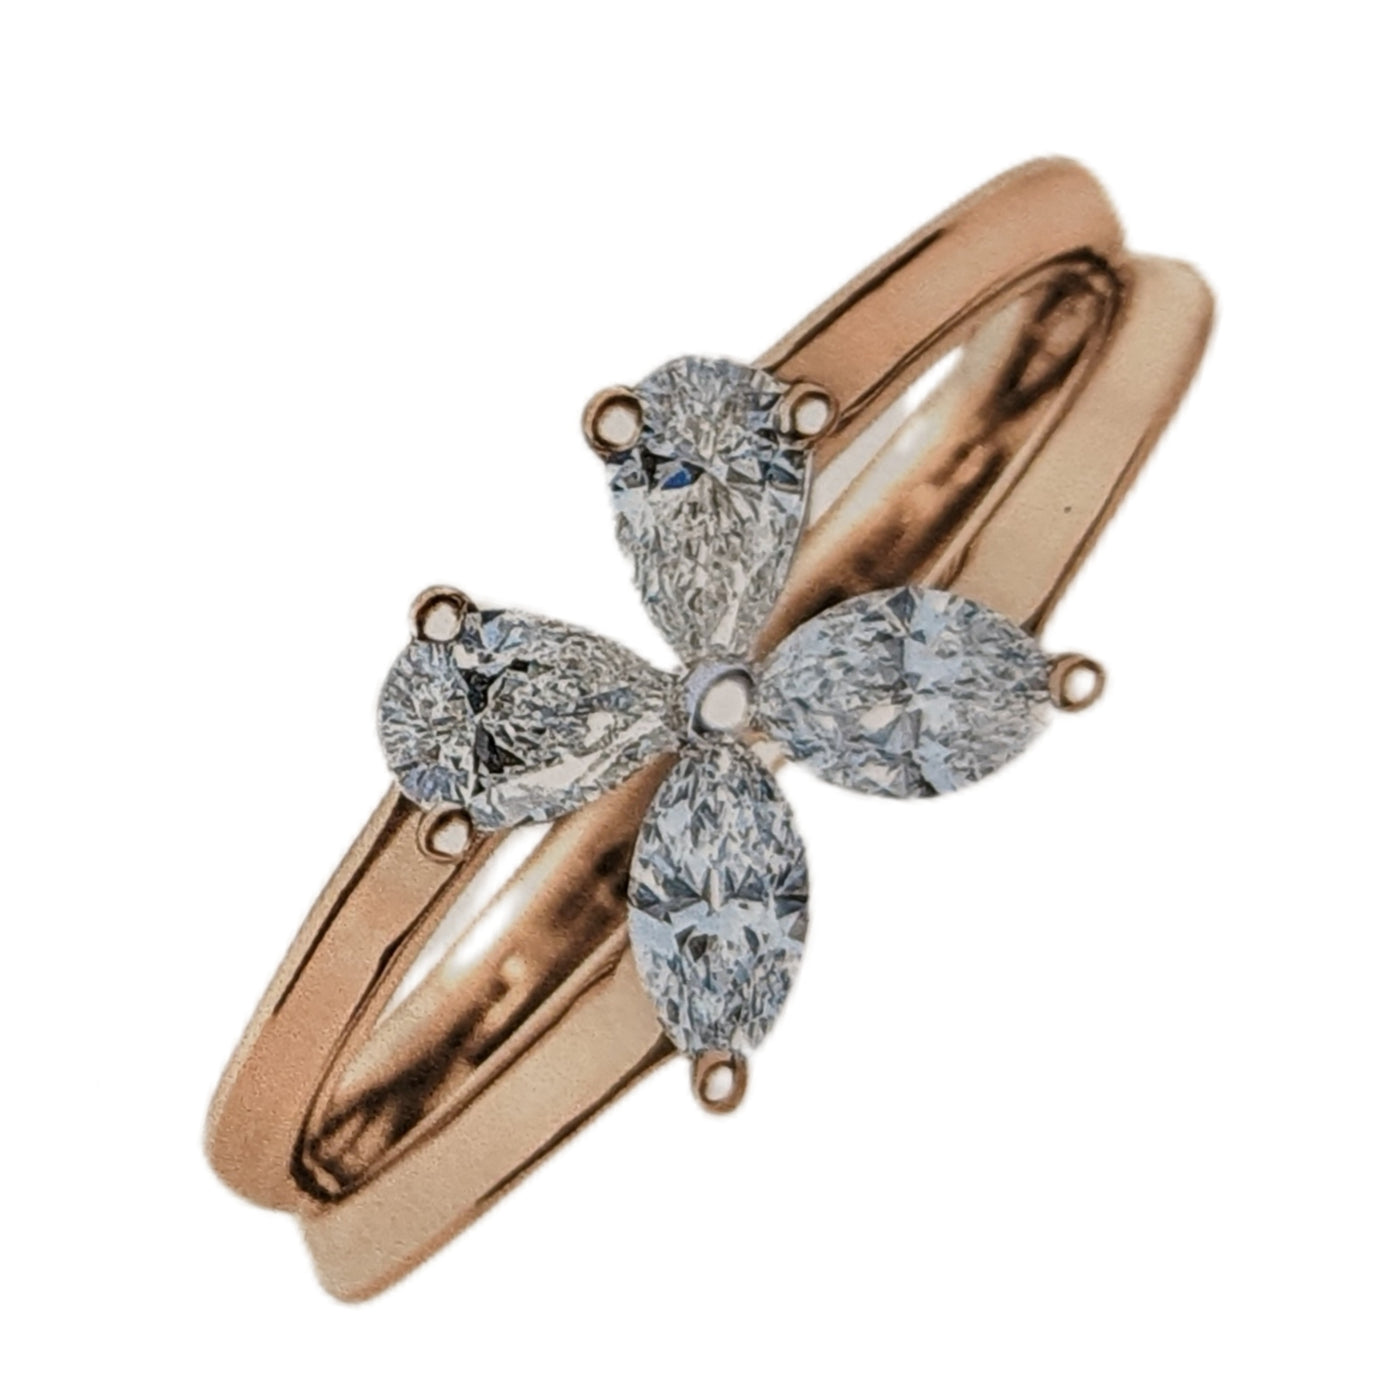 Ayla Diamond Ring